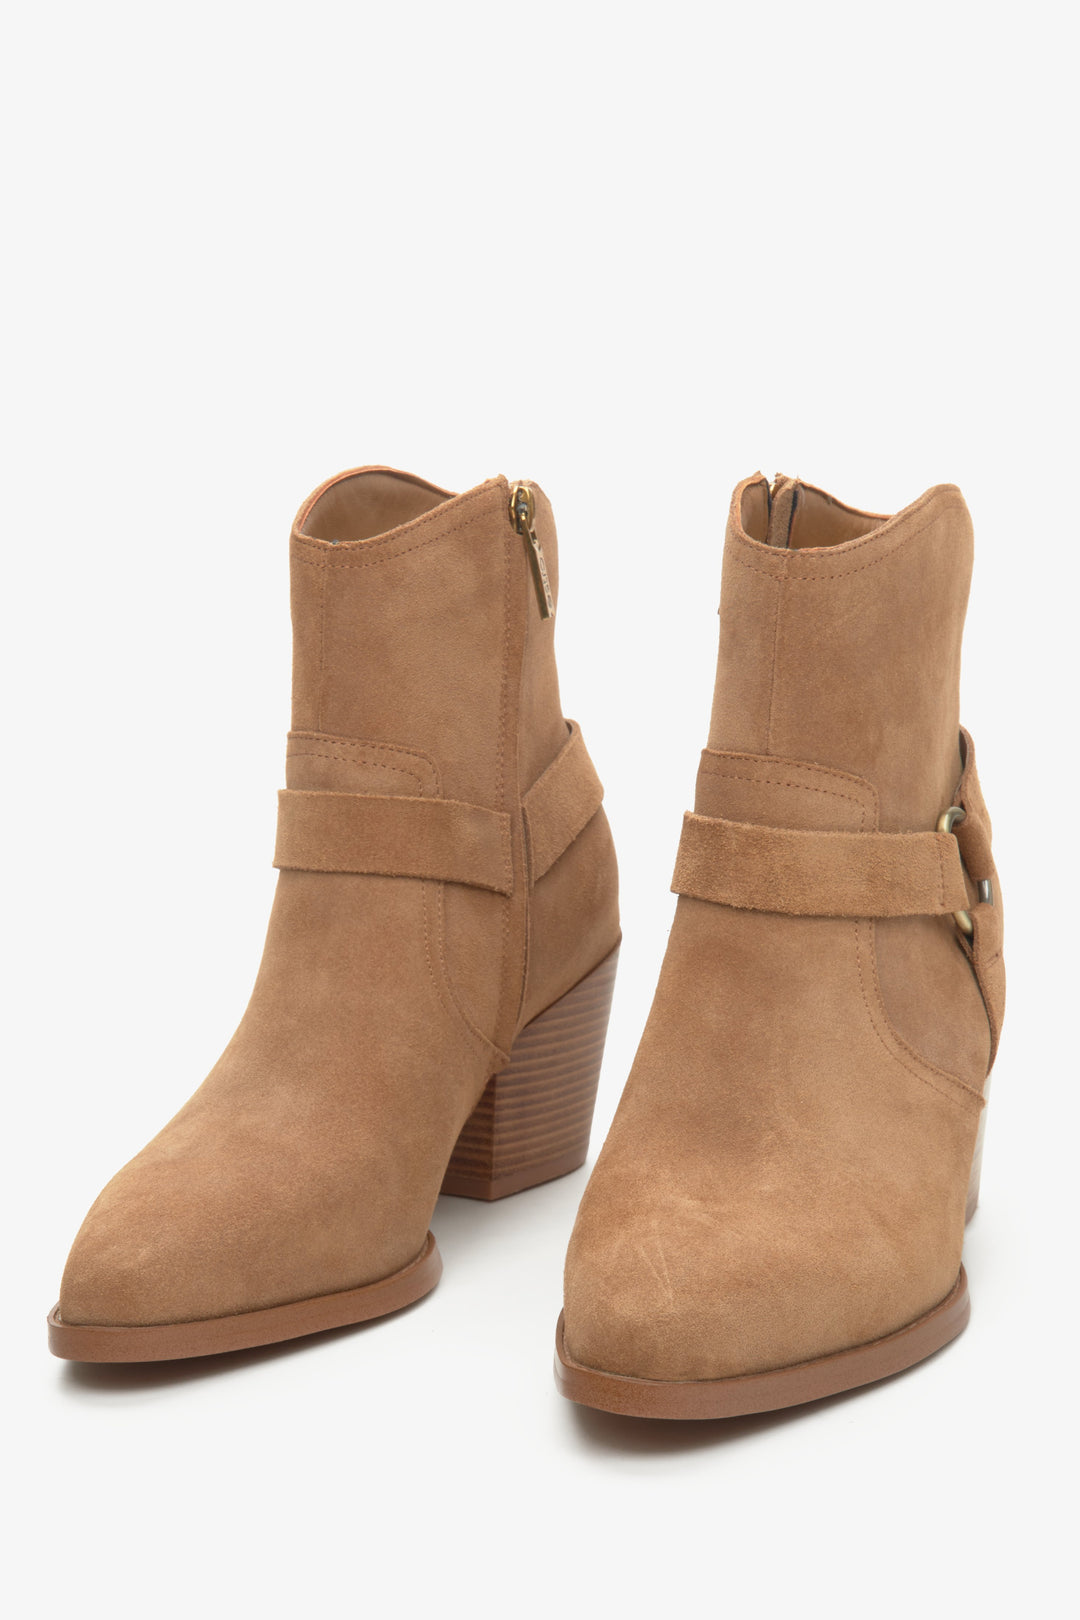 Women's short brown suede cowboy boots by Estro.